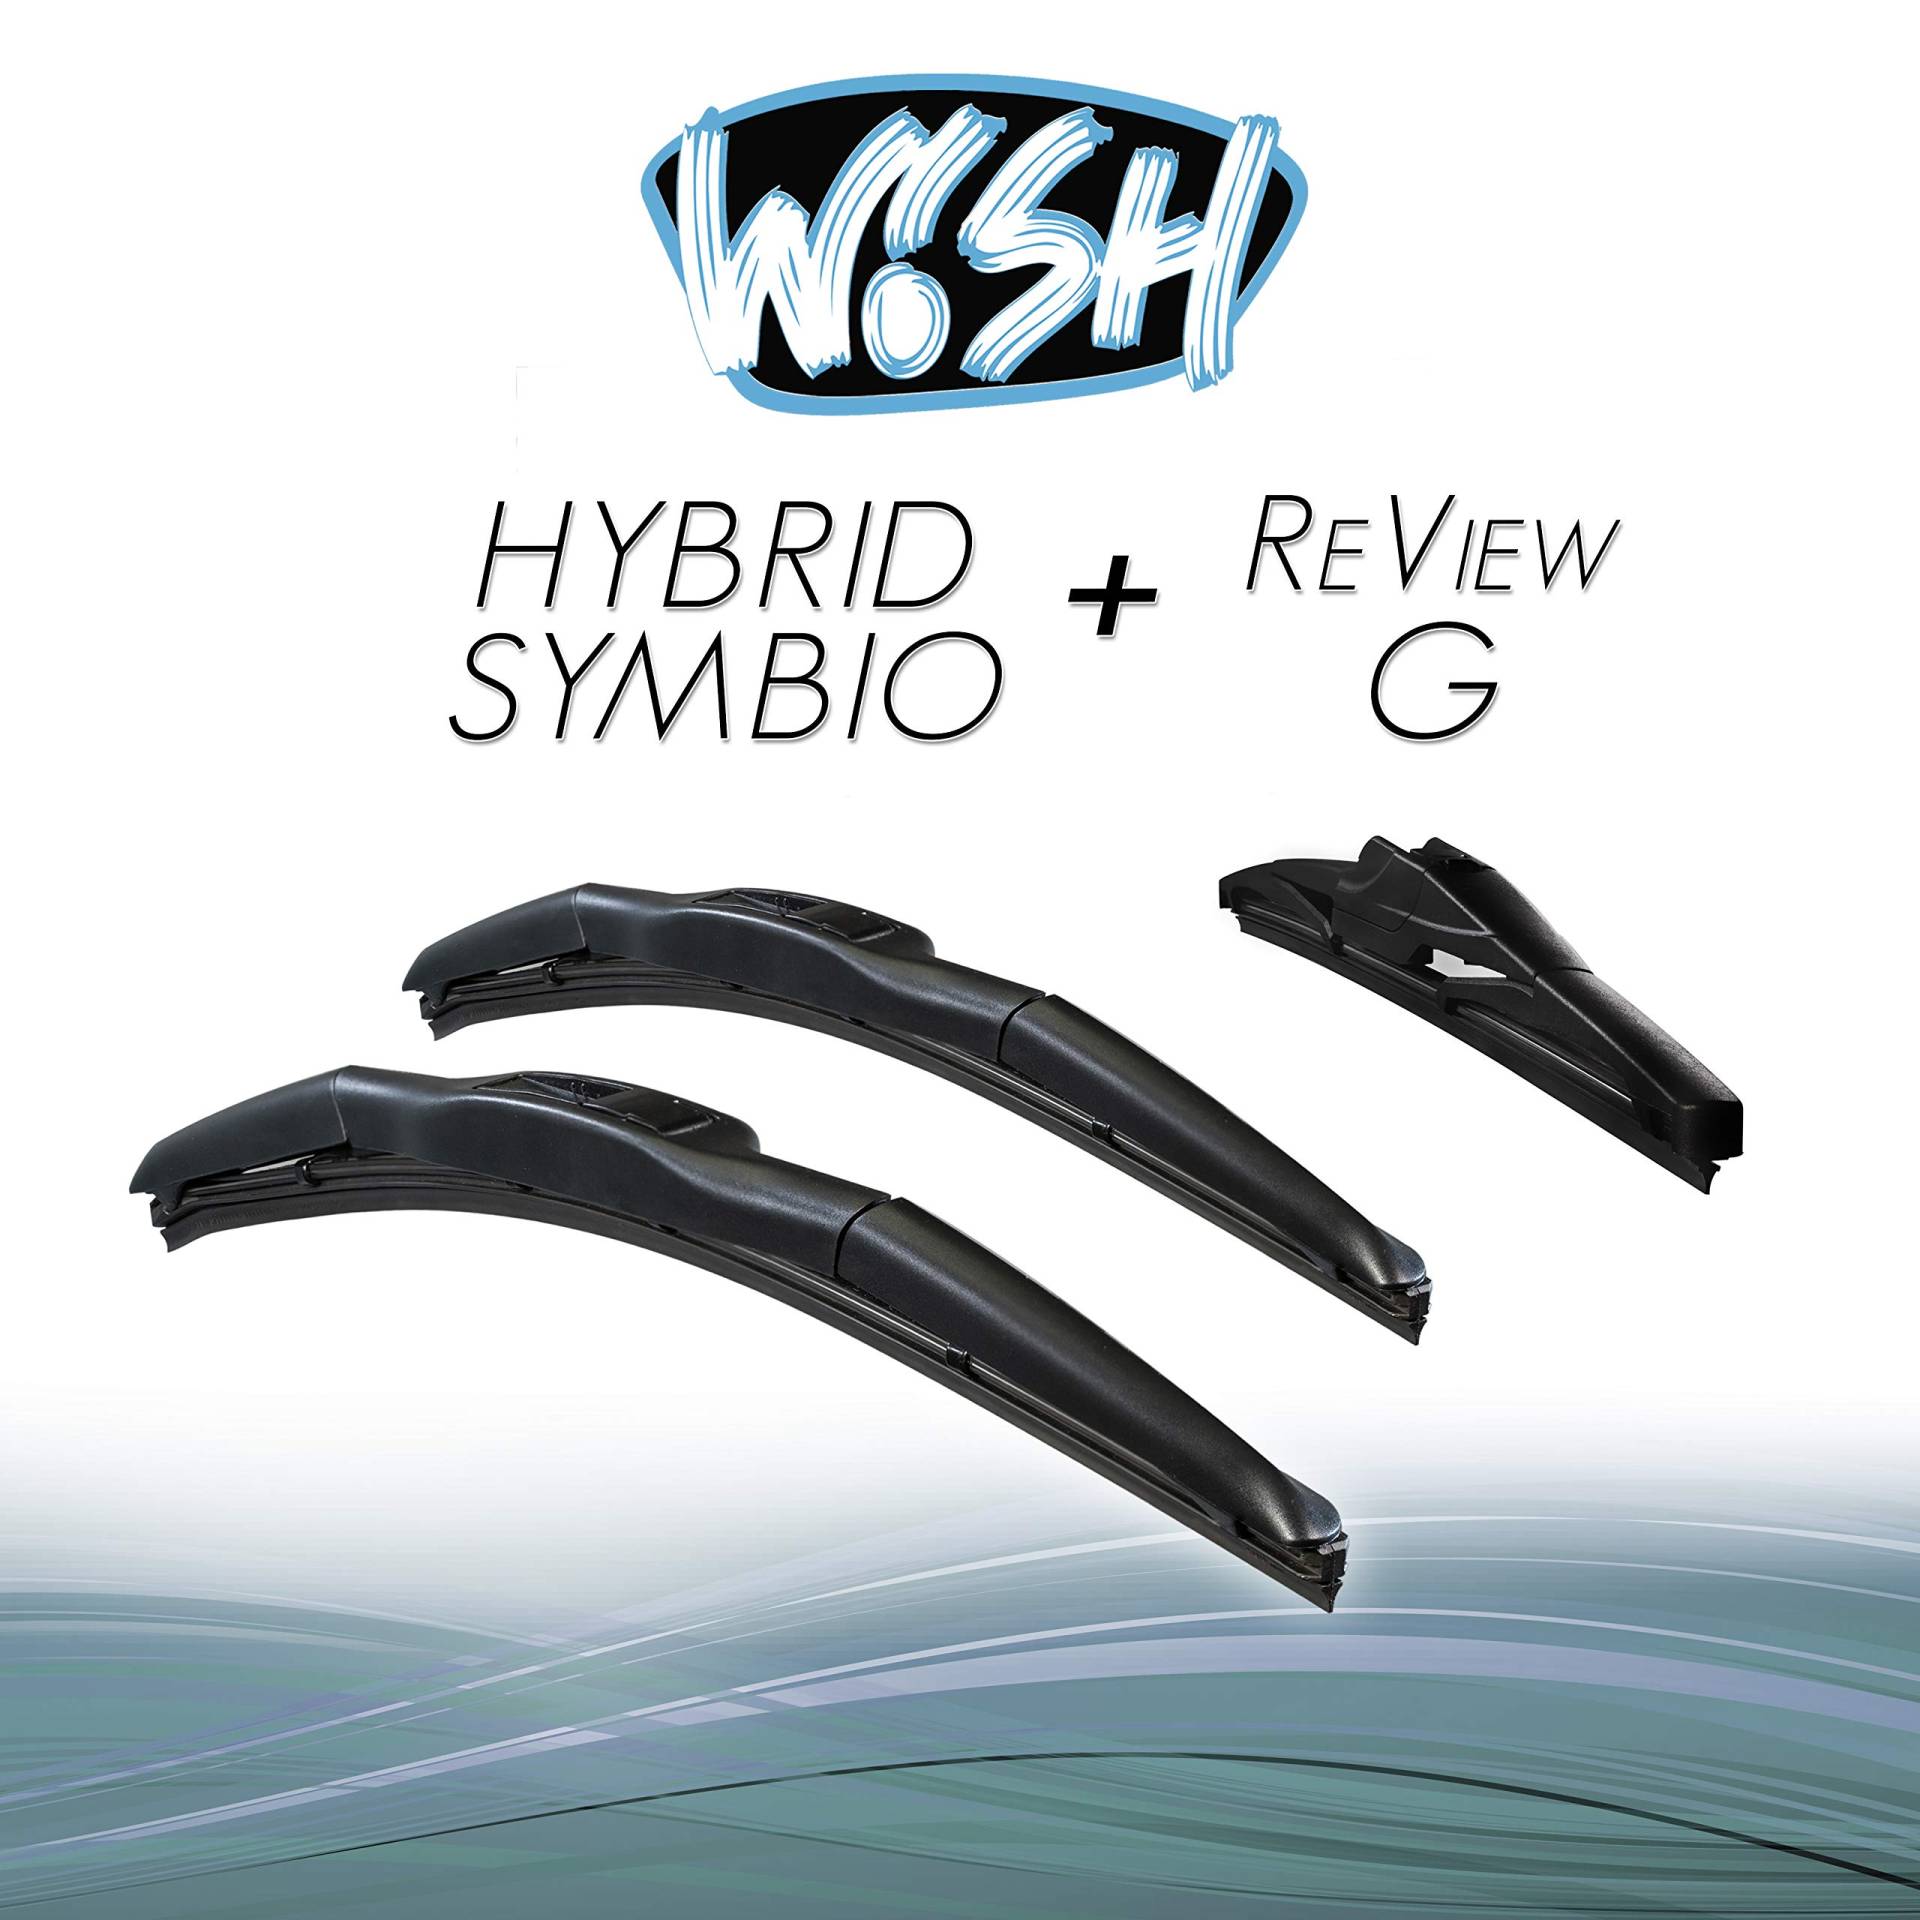 Wish® Hybrid Symbio Satz Front + Heck Scheibenwischer Länge: 16" 400mm / 16" 400mm / 11" 280mm Wischblätter Vorne und Hinten Hybrid-Scheibenwischer + Review G HS16.16.RG11 von Wish